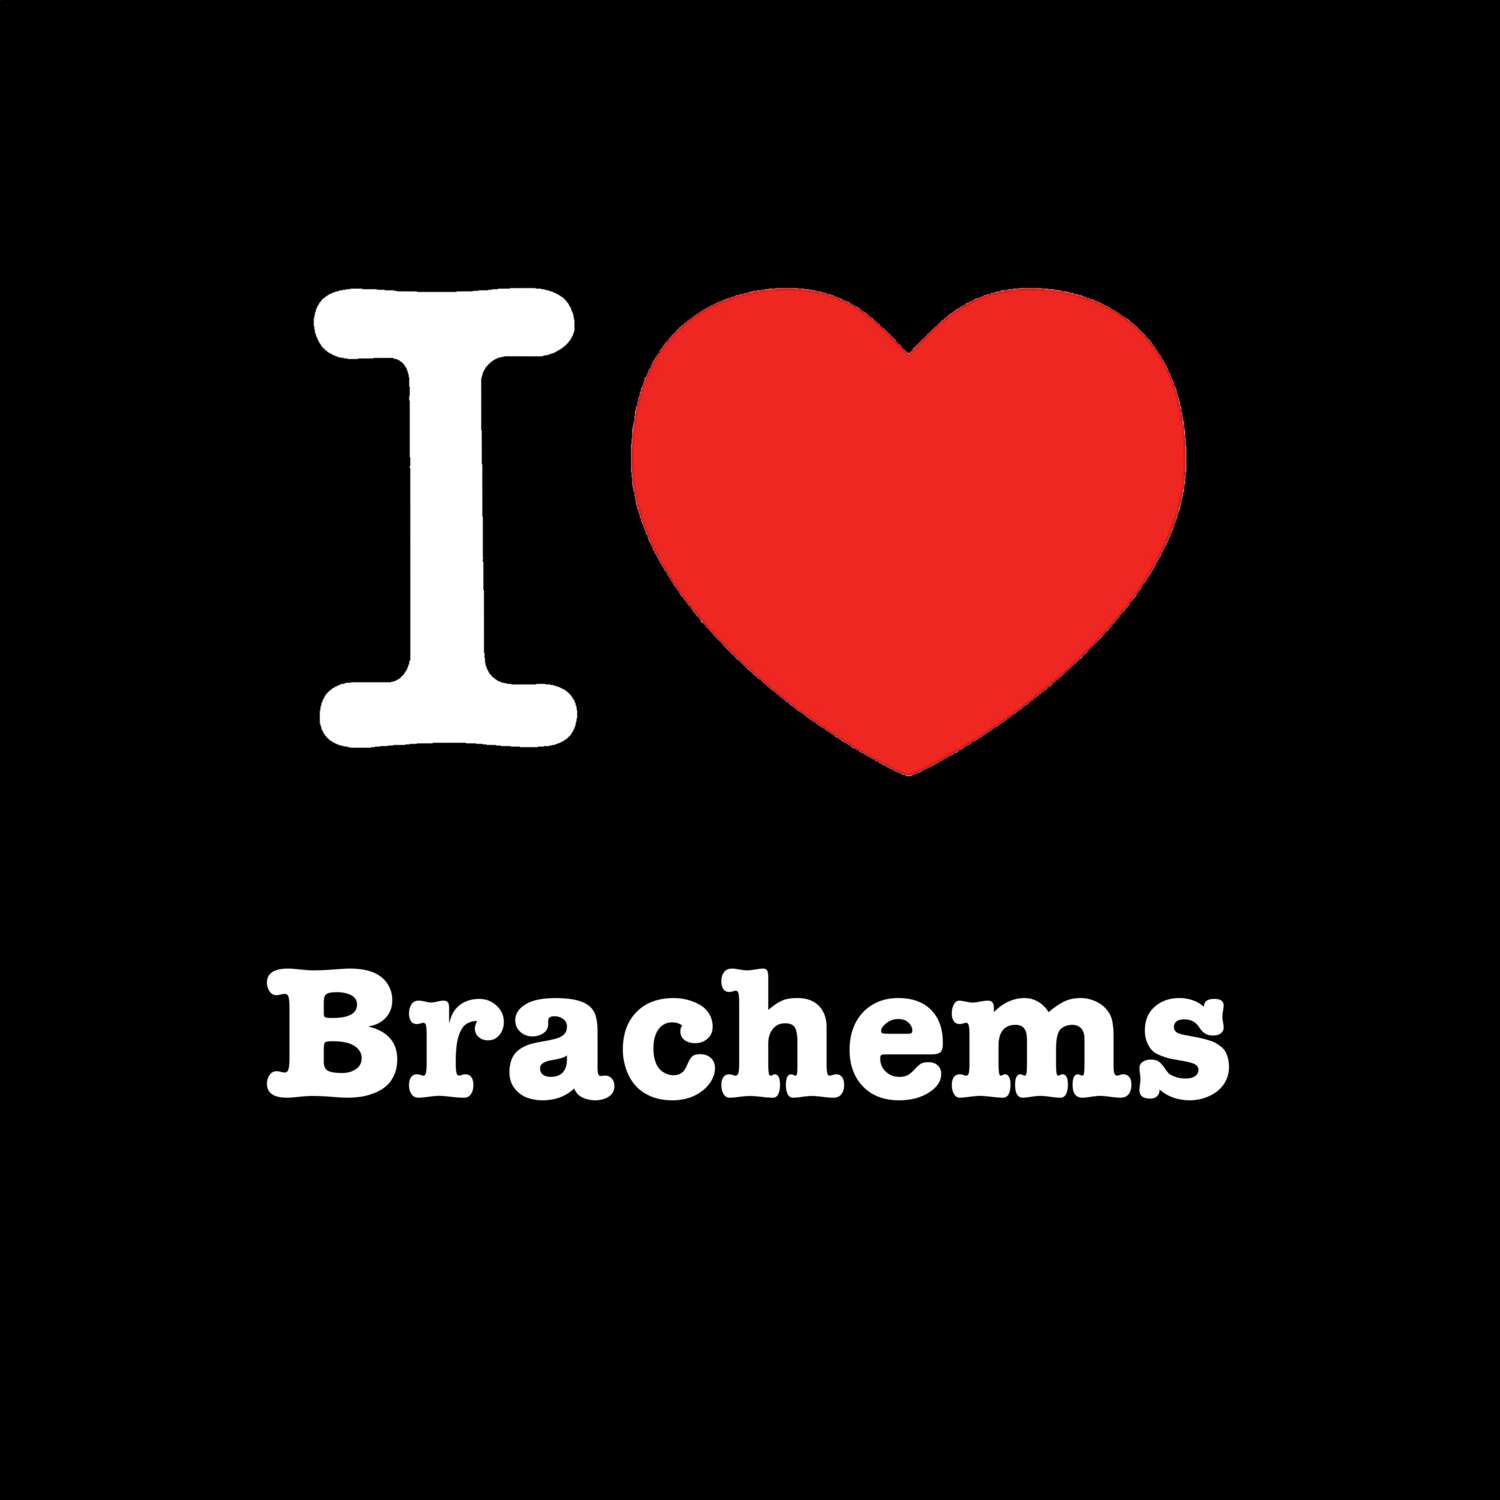 Brachems T-Shirt »I love«